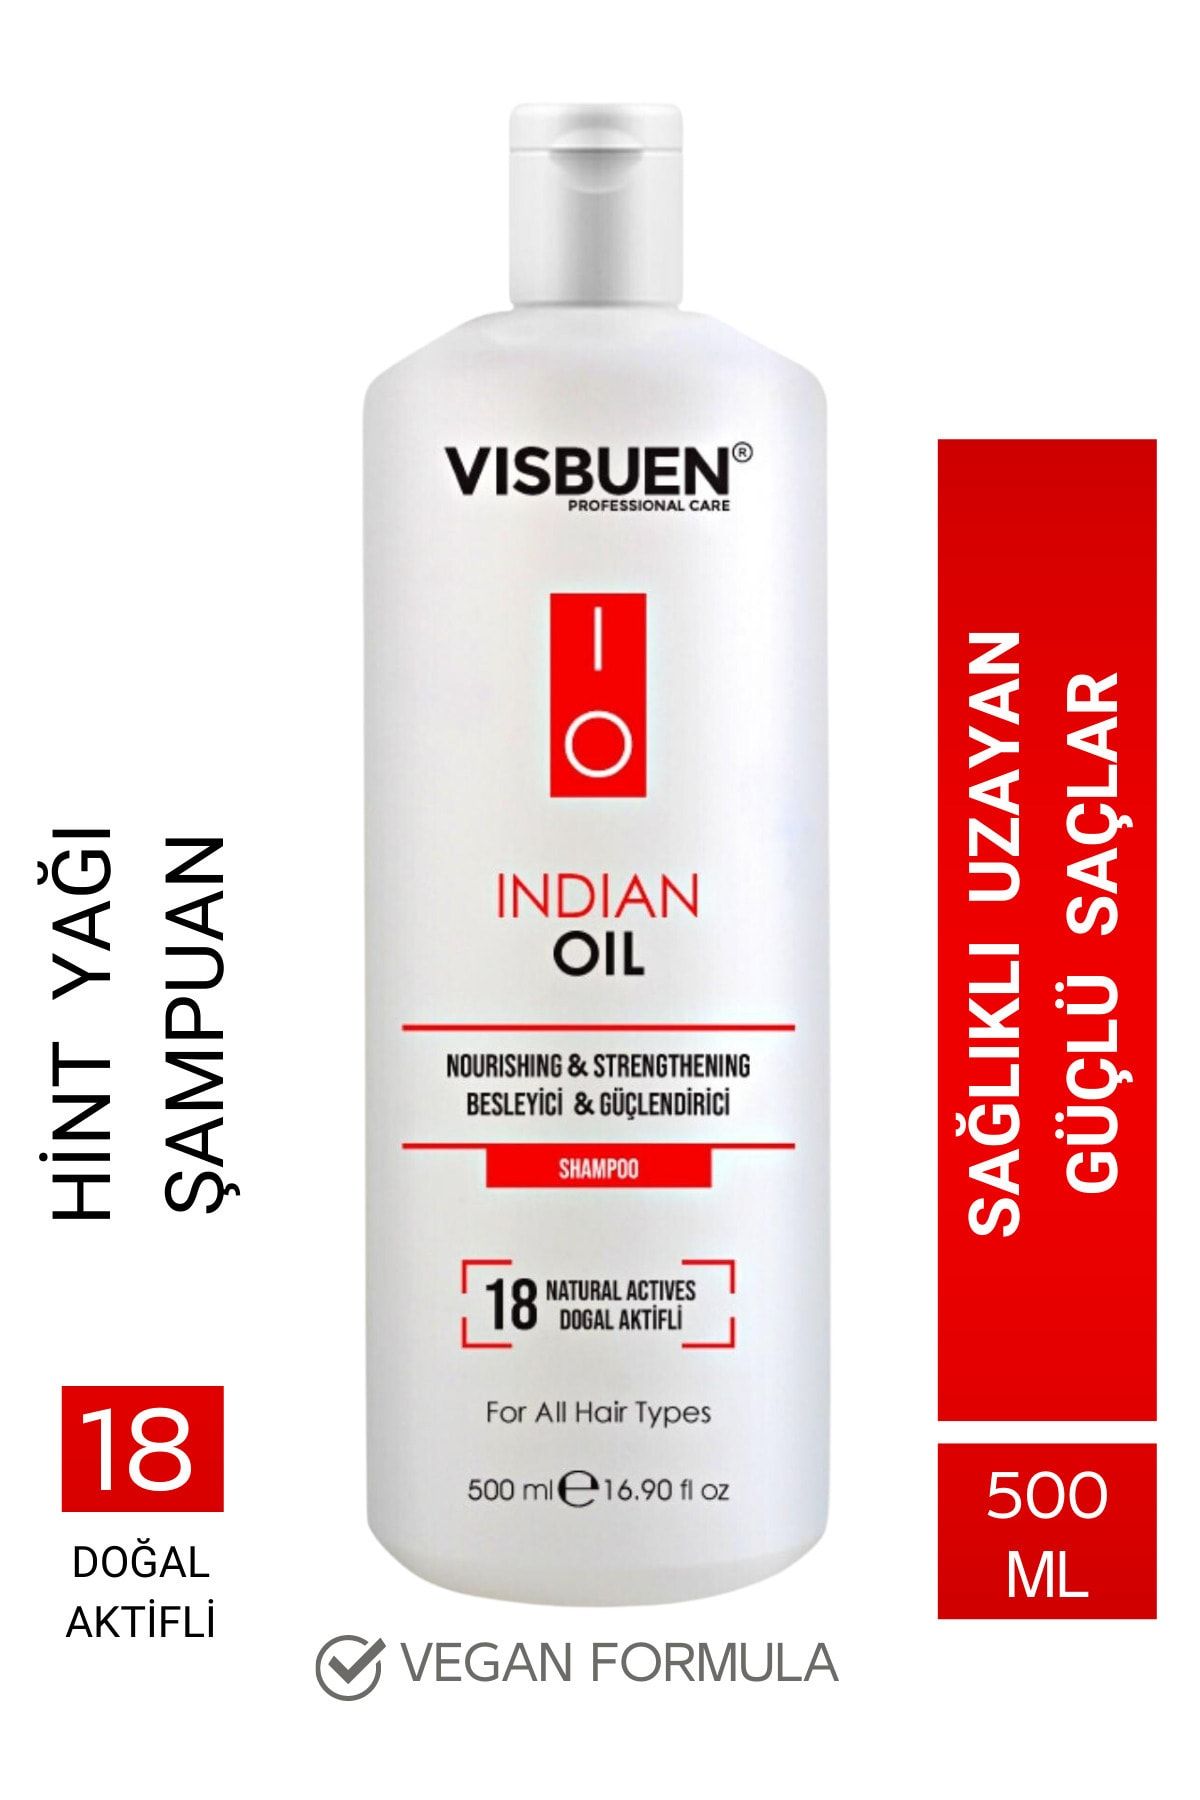 Visbuen Hint Yağı 18 Doğal Aktifli Hızlı Saç Uzatma Ve Besleyici Güçlendirici Etkili Şampuan